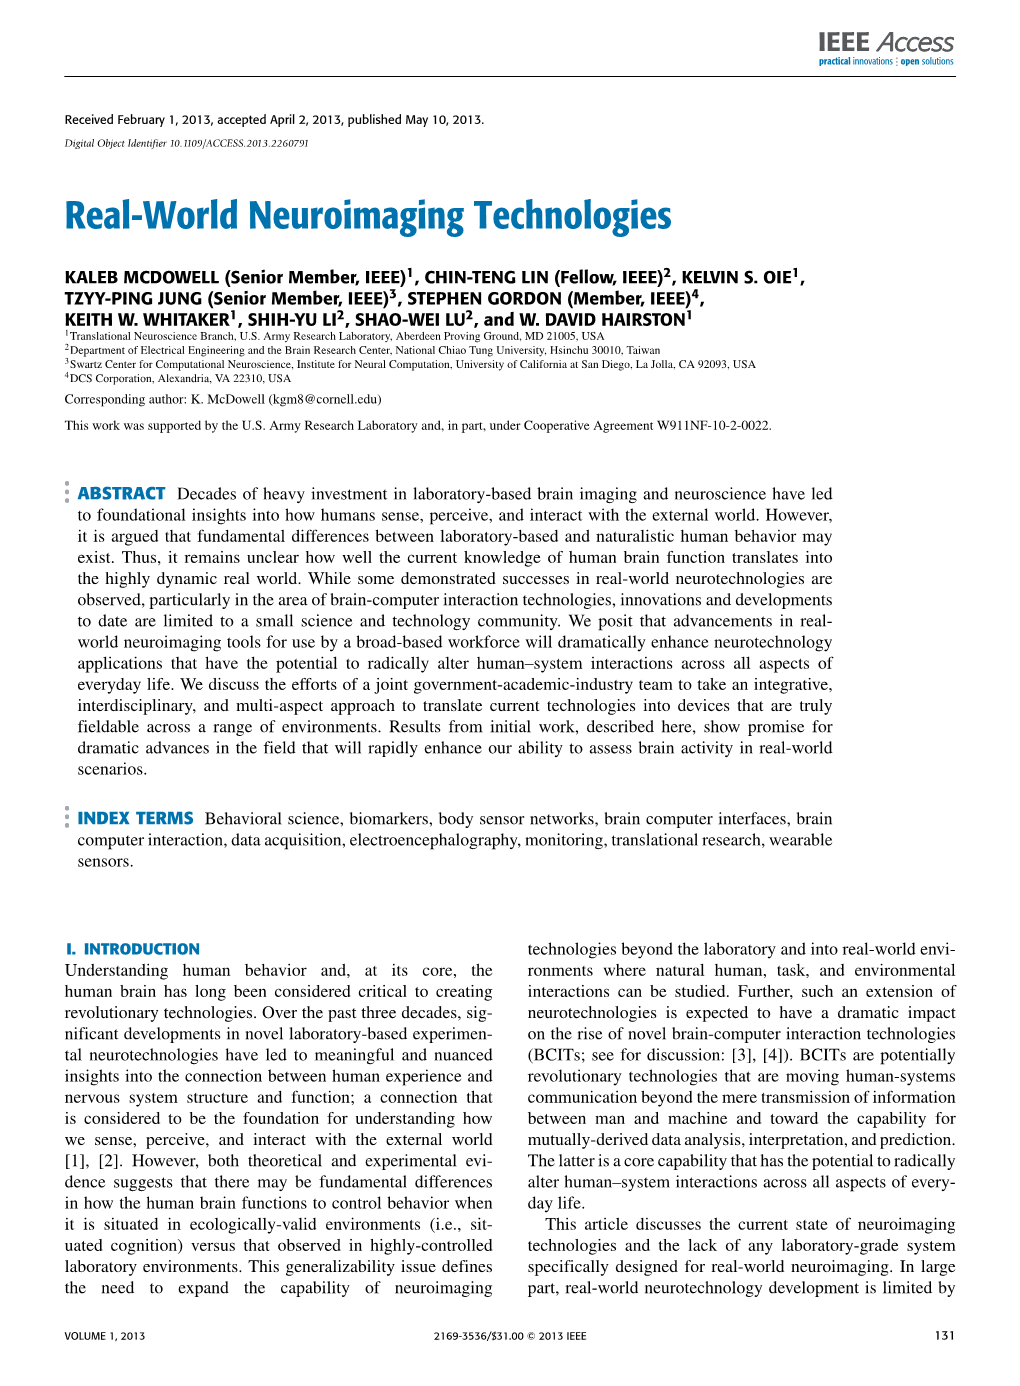 Real-World Neuroimaging Technologies